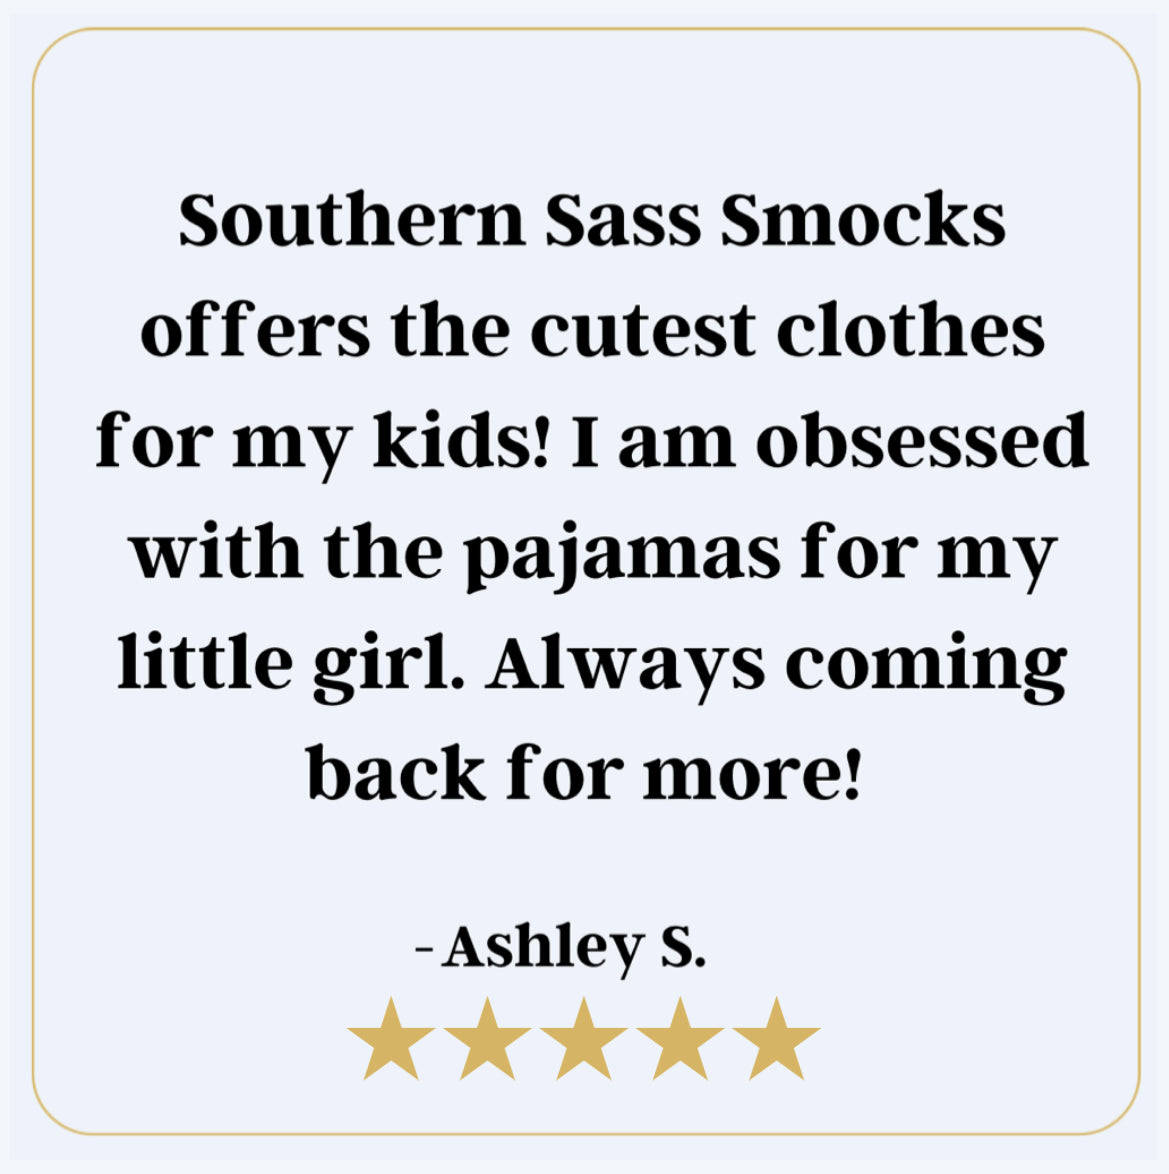 Southern Sass Smocks